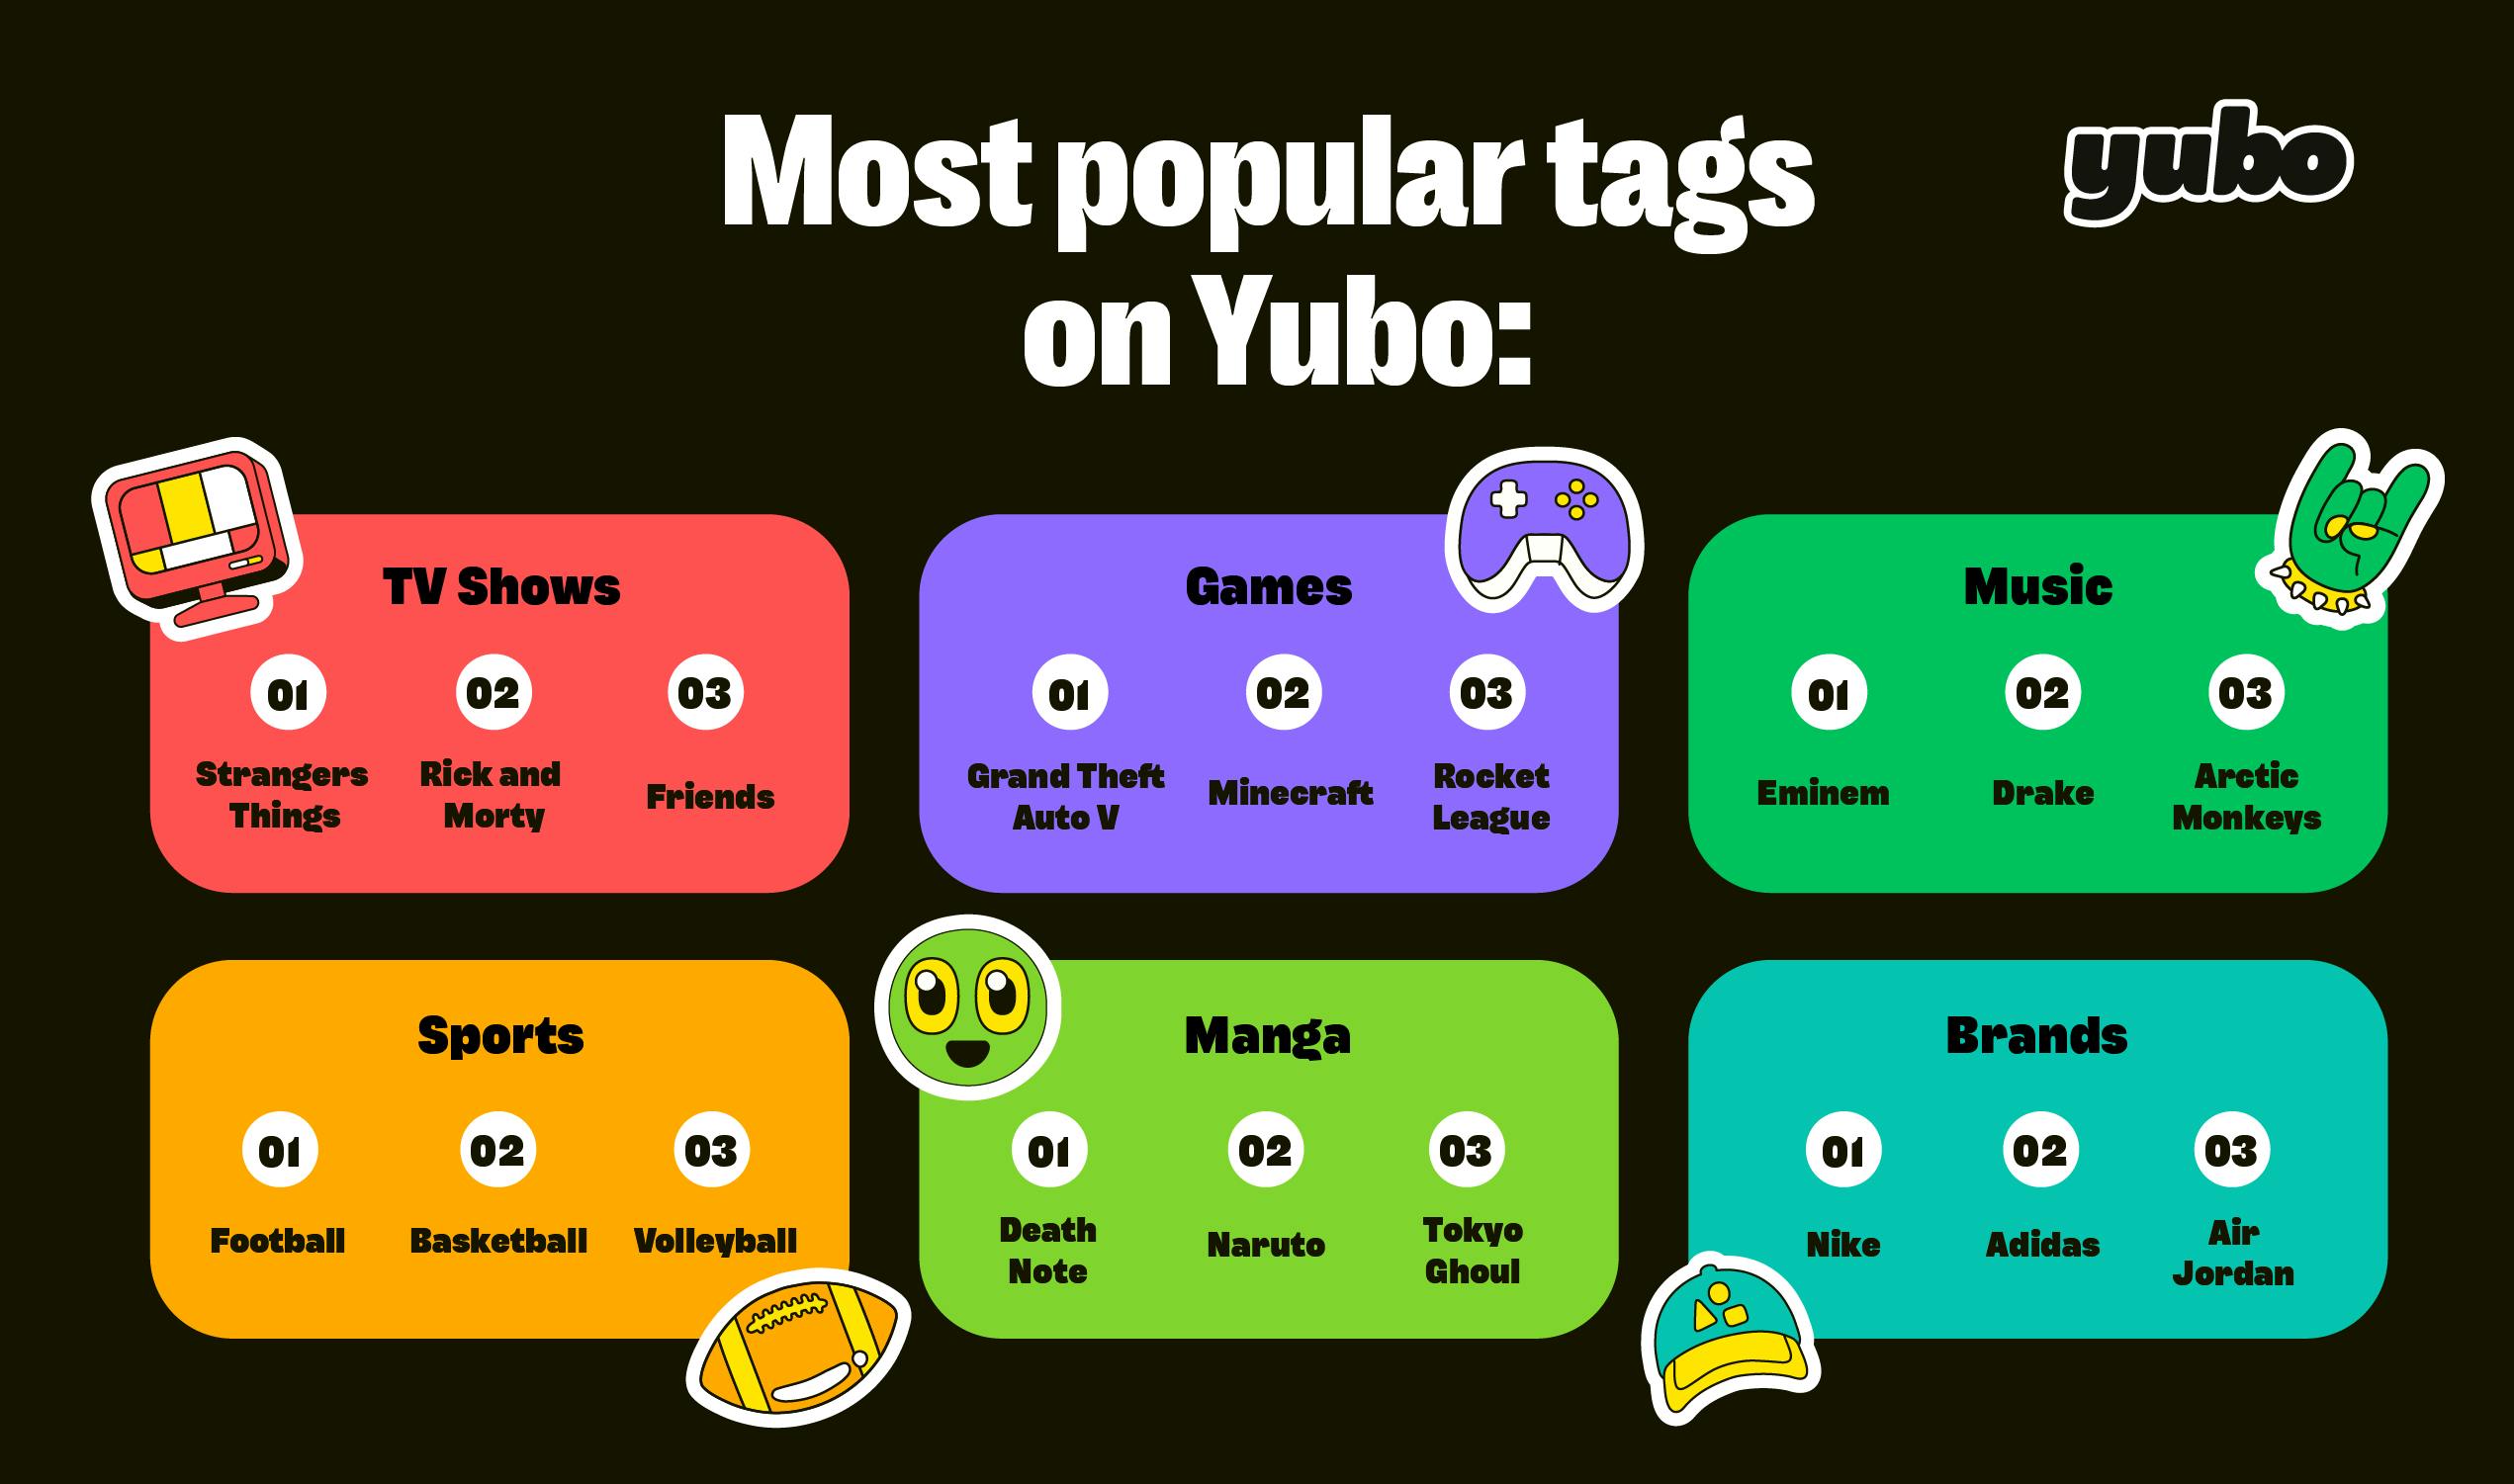 Mest populære tag på Yubo. Der findes 6 kategorier: Tv-serier, spil, musik, sport, Manga og brand